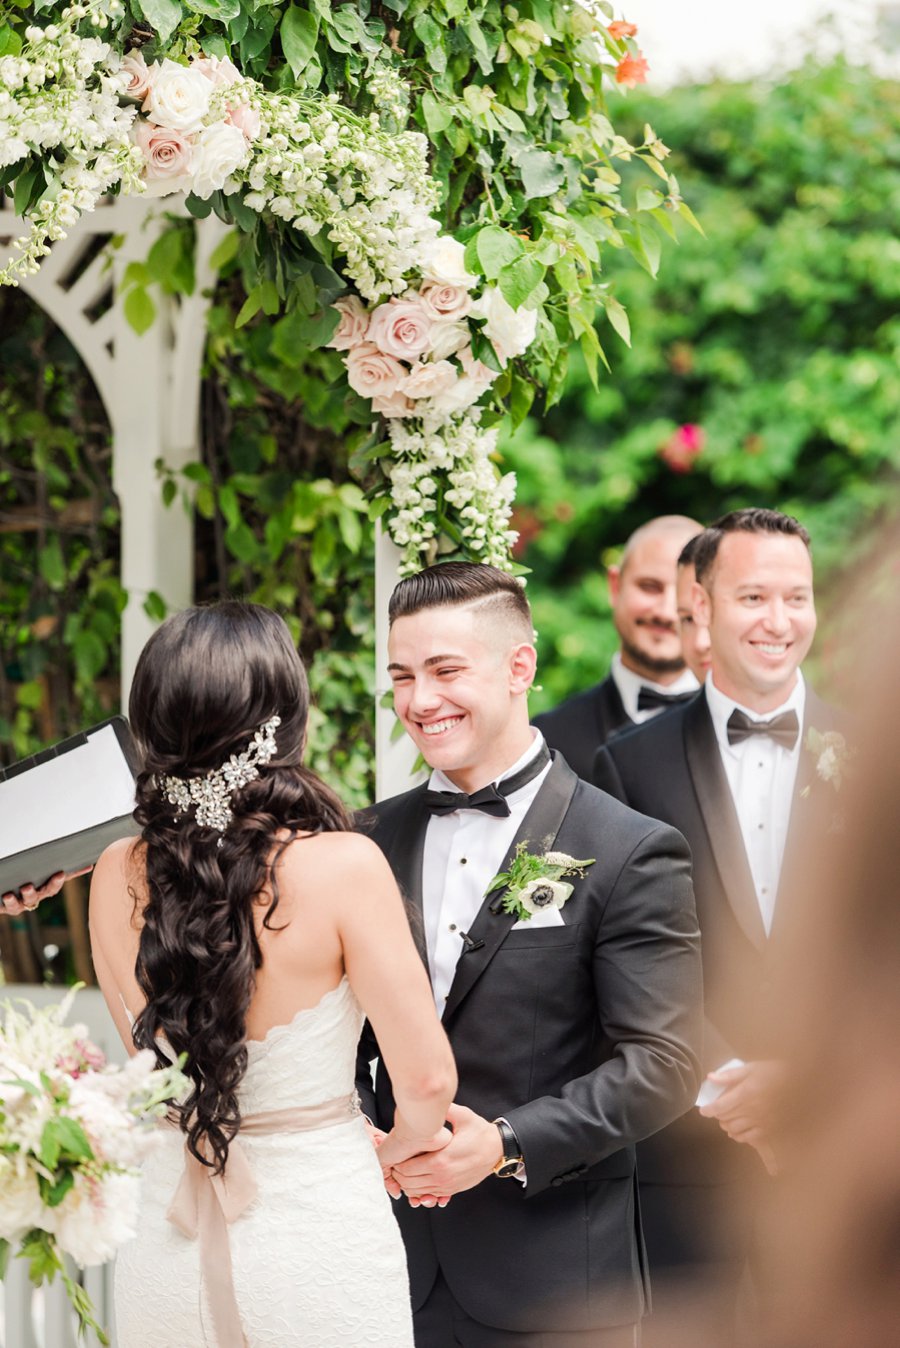 A Glamorous Black, White, & Gold Miami Wedding via TheELD.com